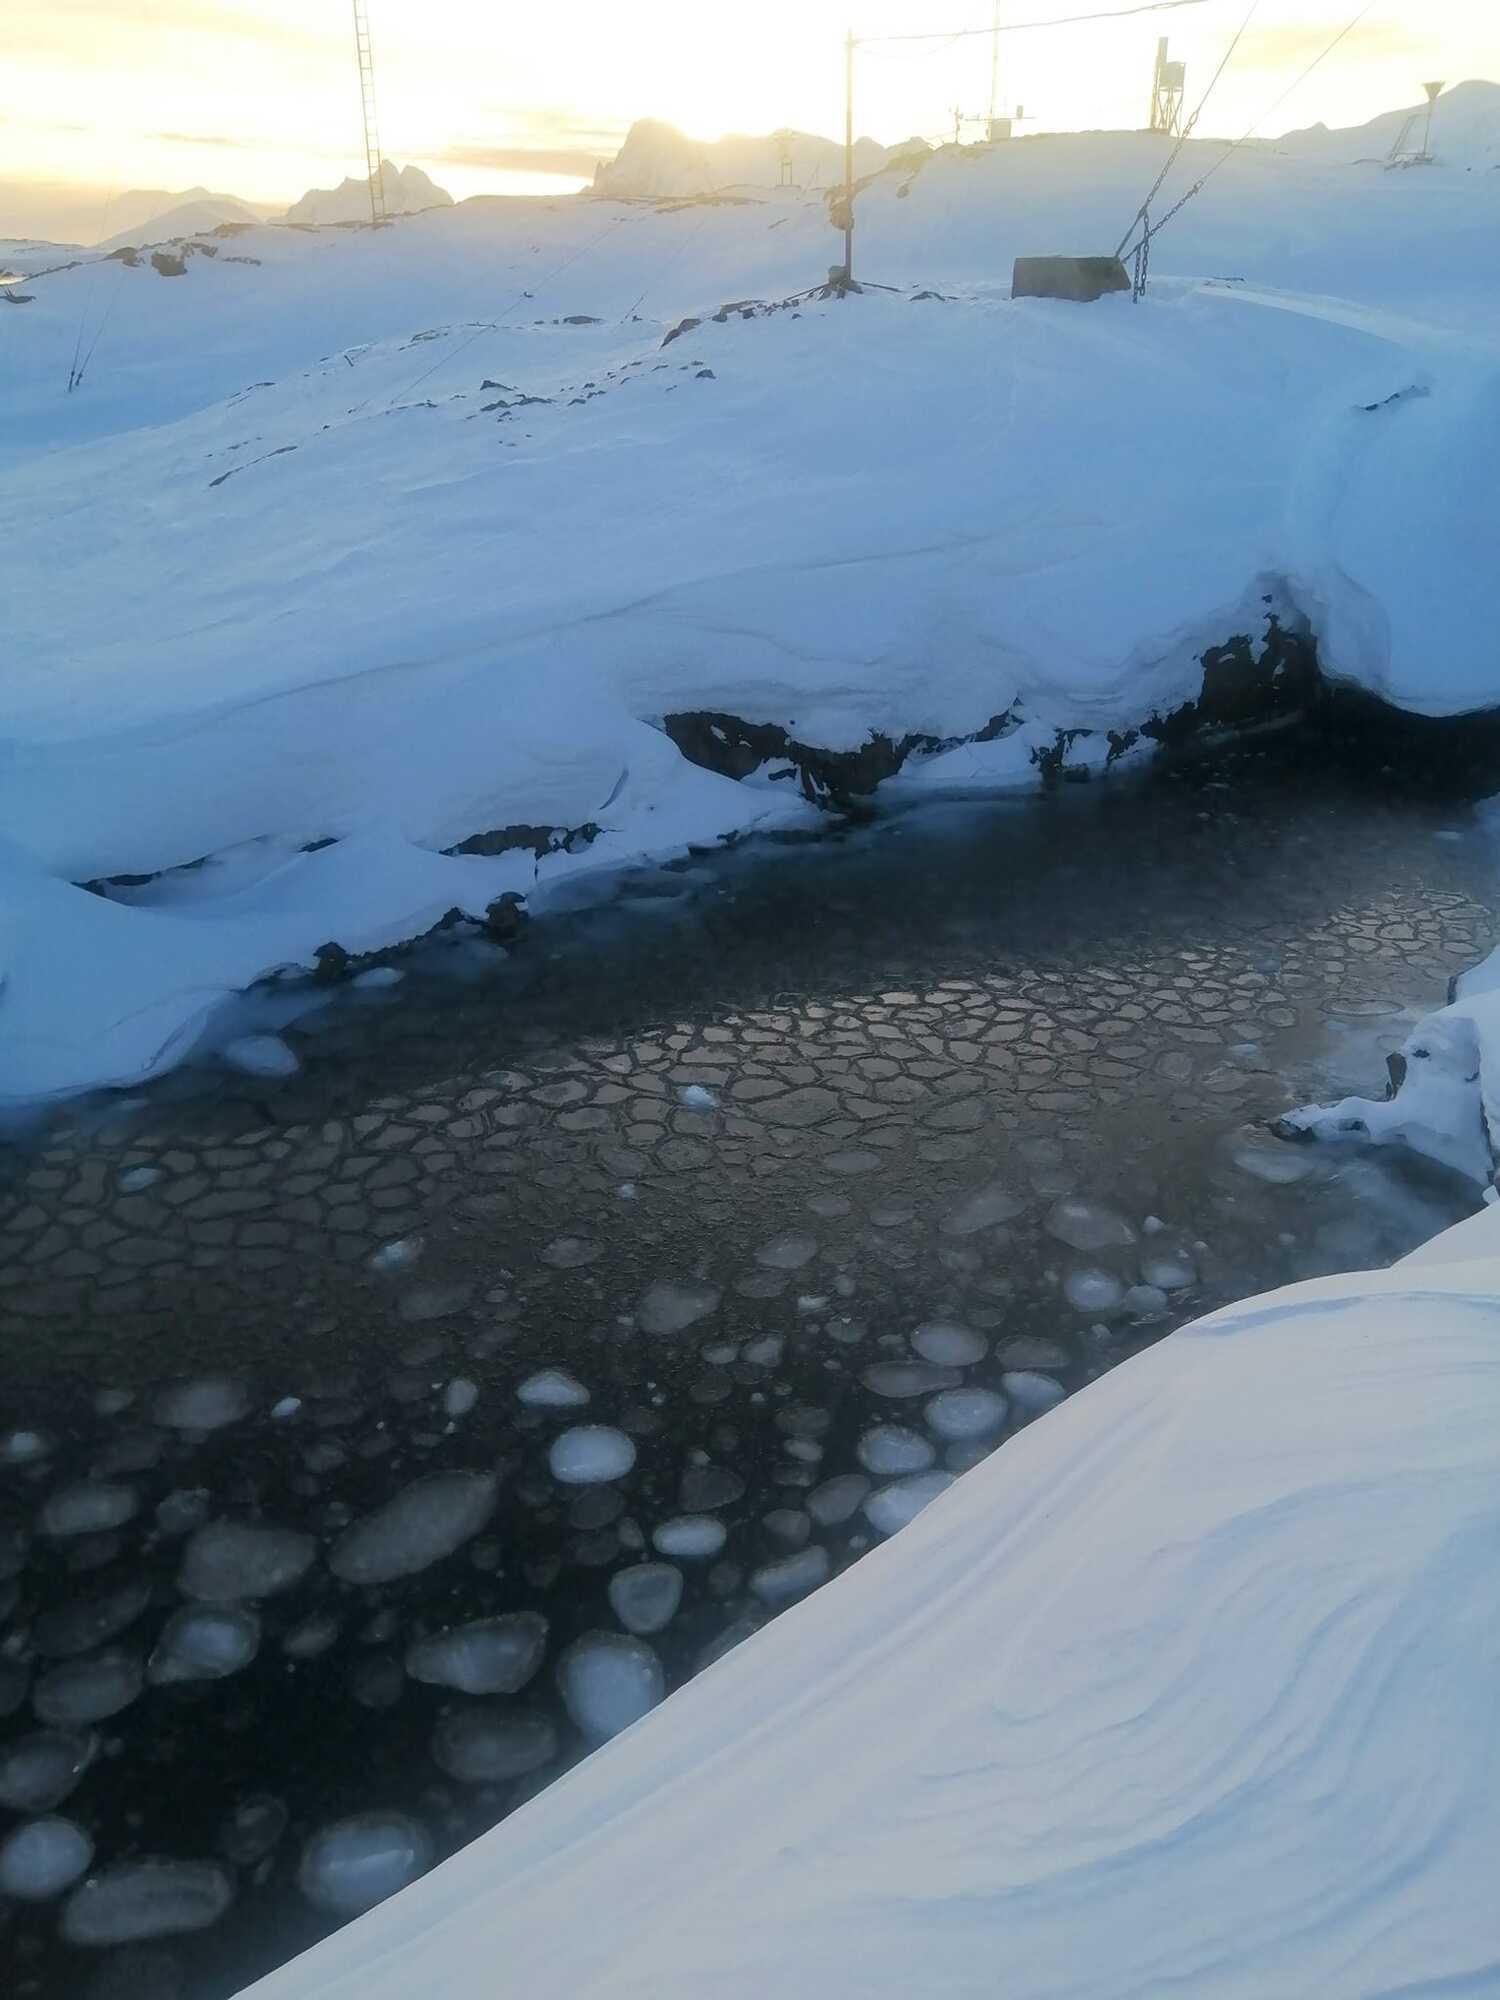 "Блинный лед": украинские полярники в Антарктике показали впечатляющее явление. Фото